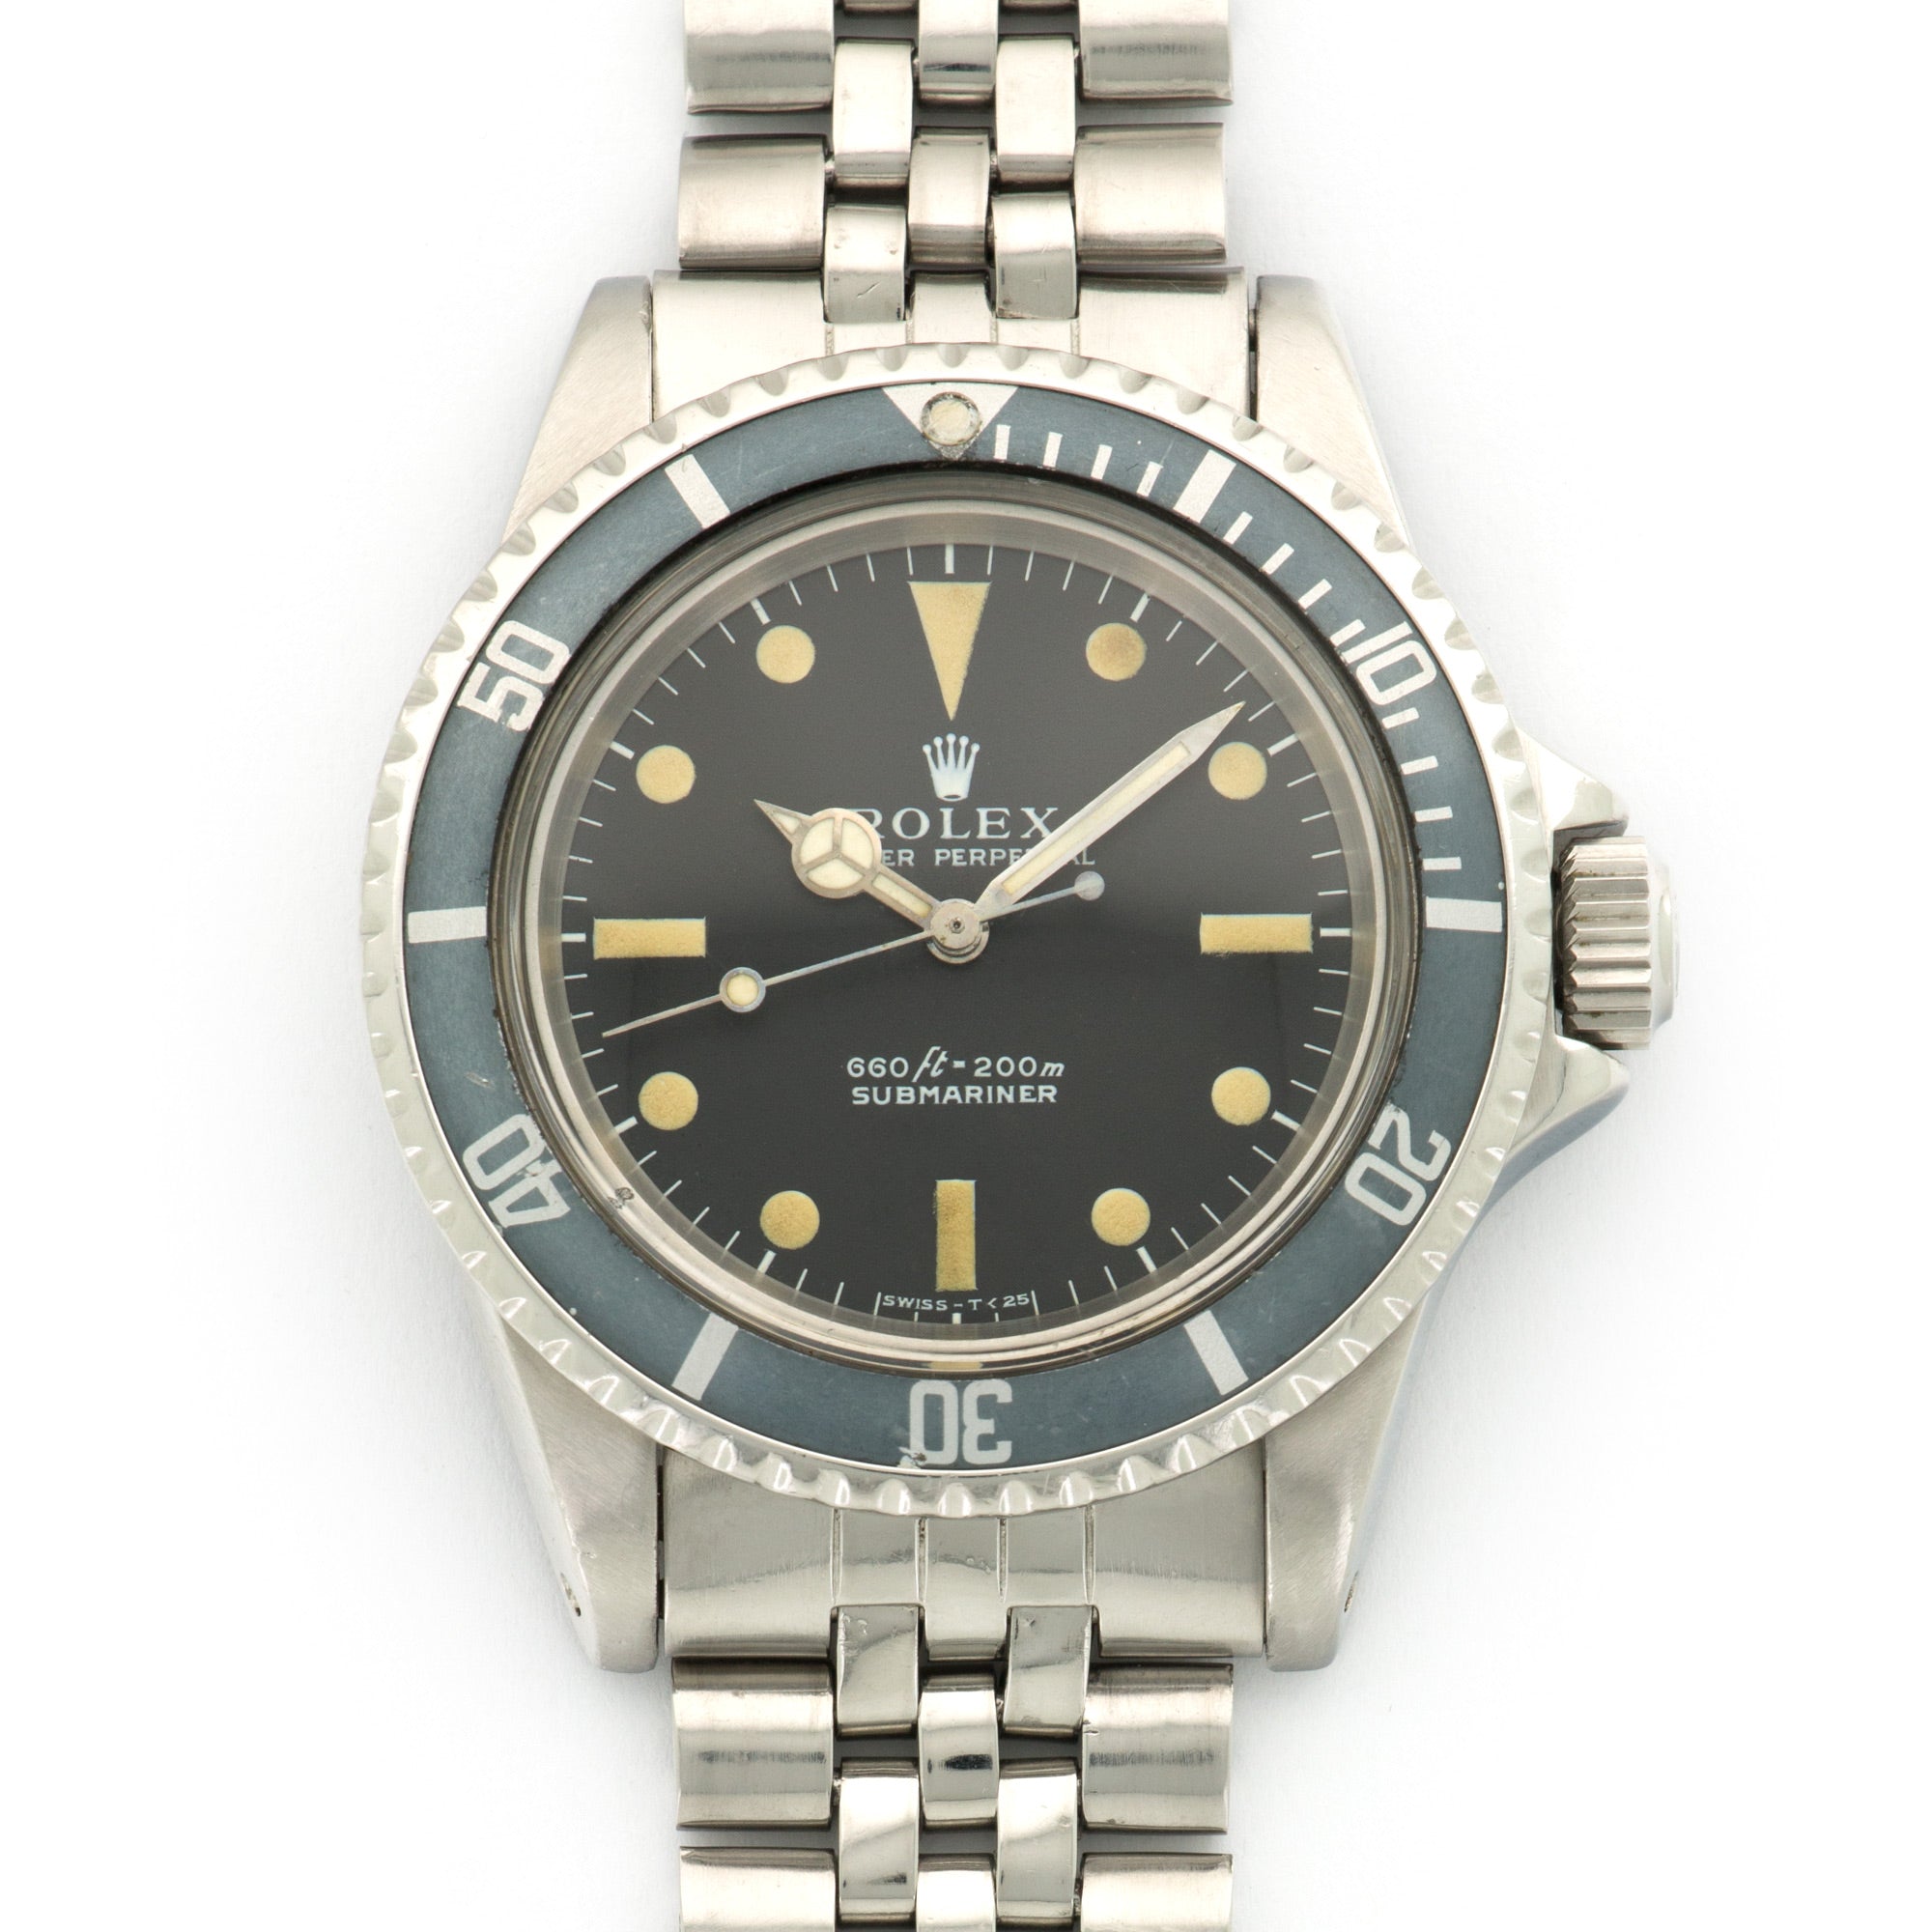 Rolex - Rolex Submariner Watch Ref. 5513 - The Keystone Watches